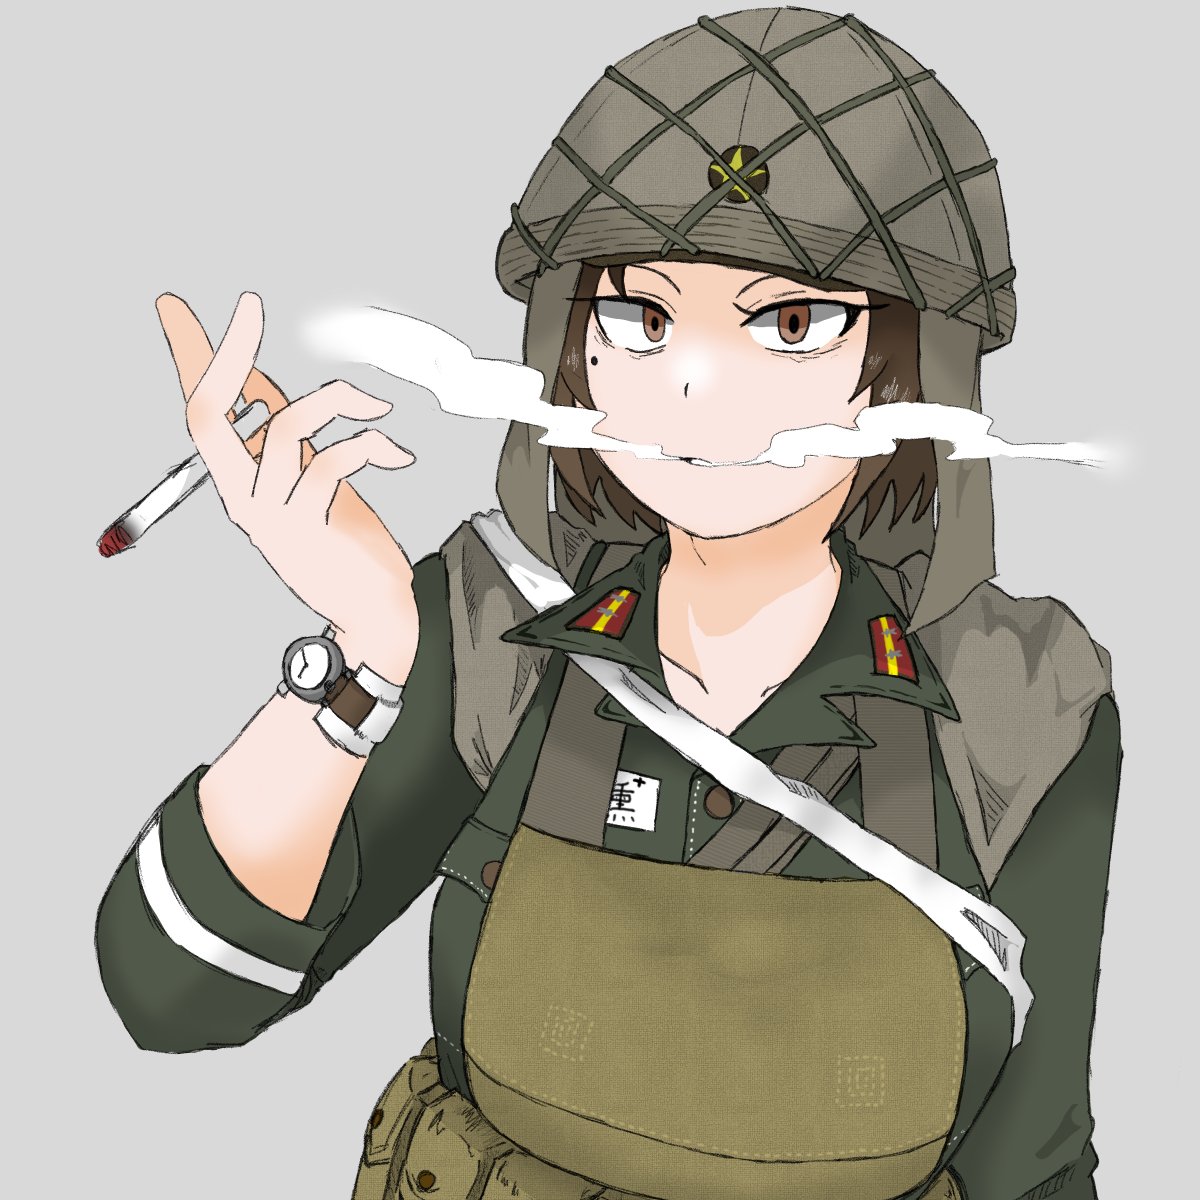 「時おり日本兵も描く。 」|矢舷陸宏＠Skeb募集のイラスト